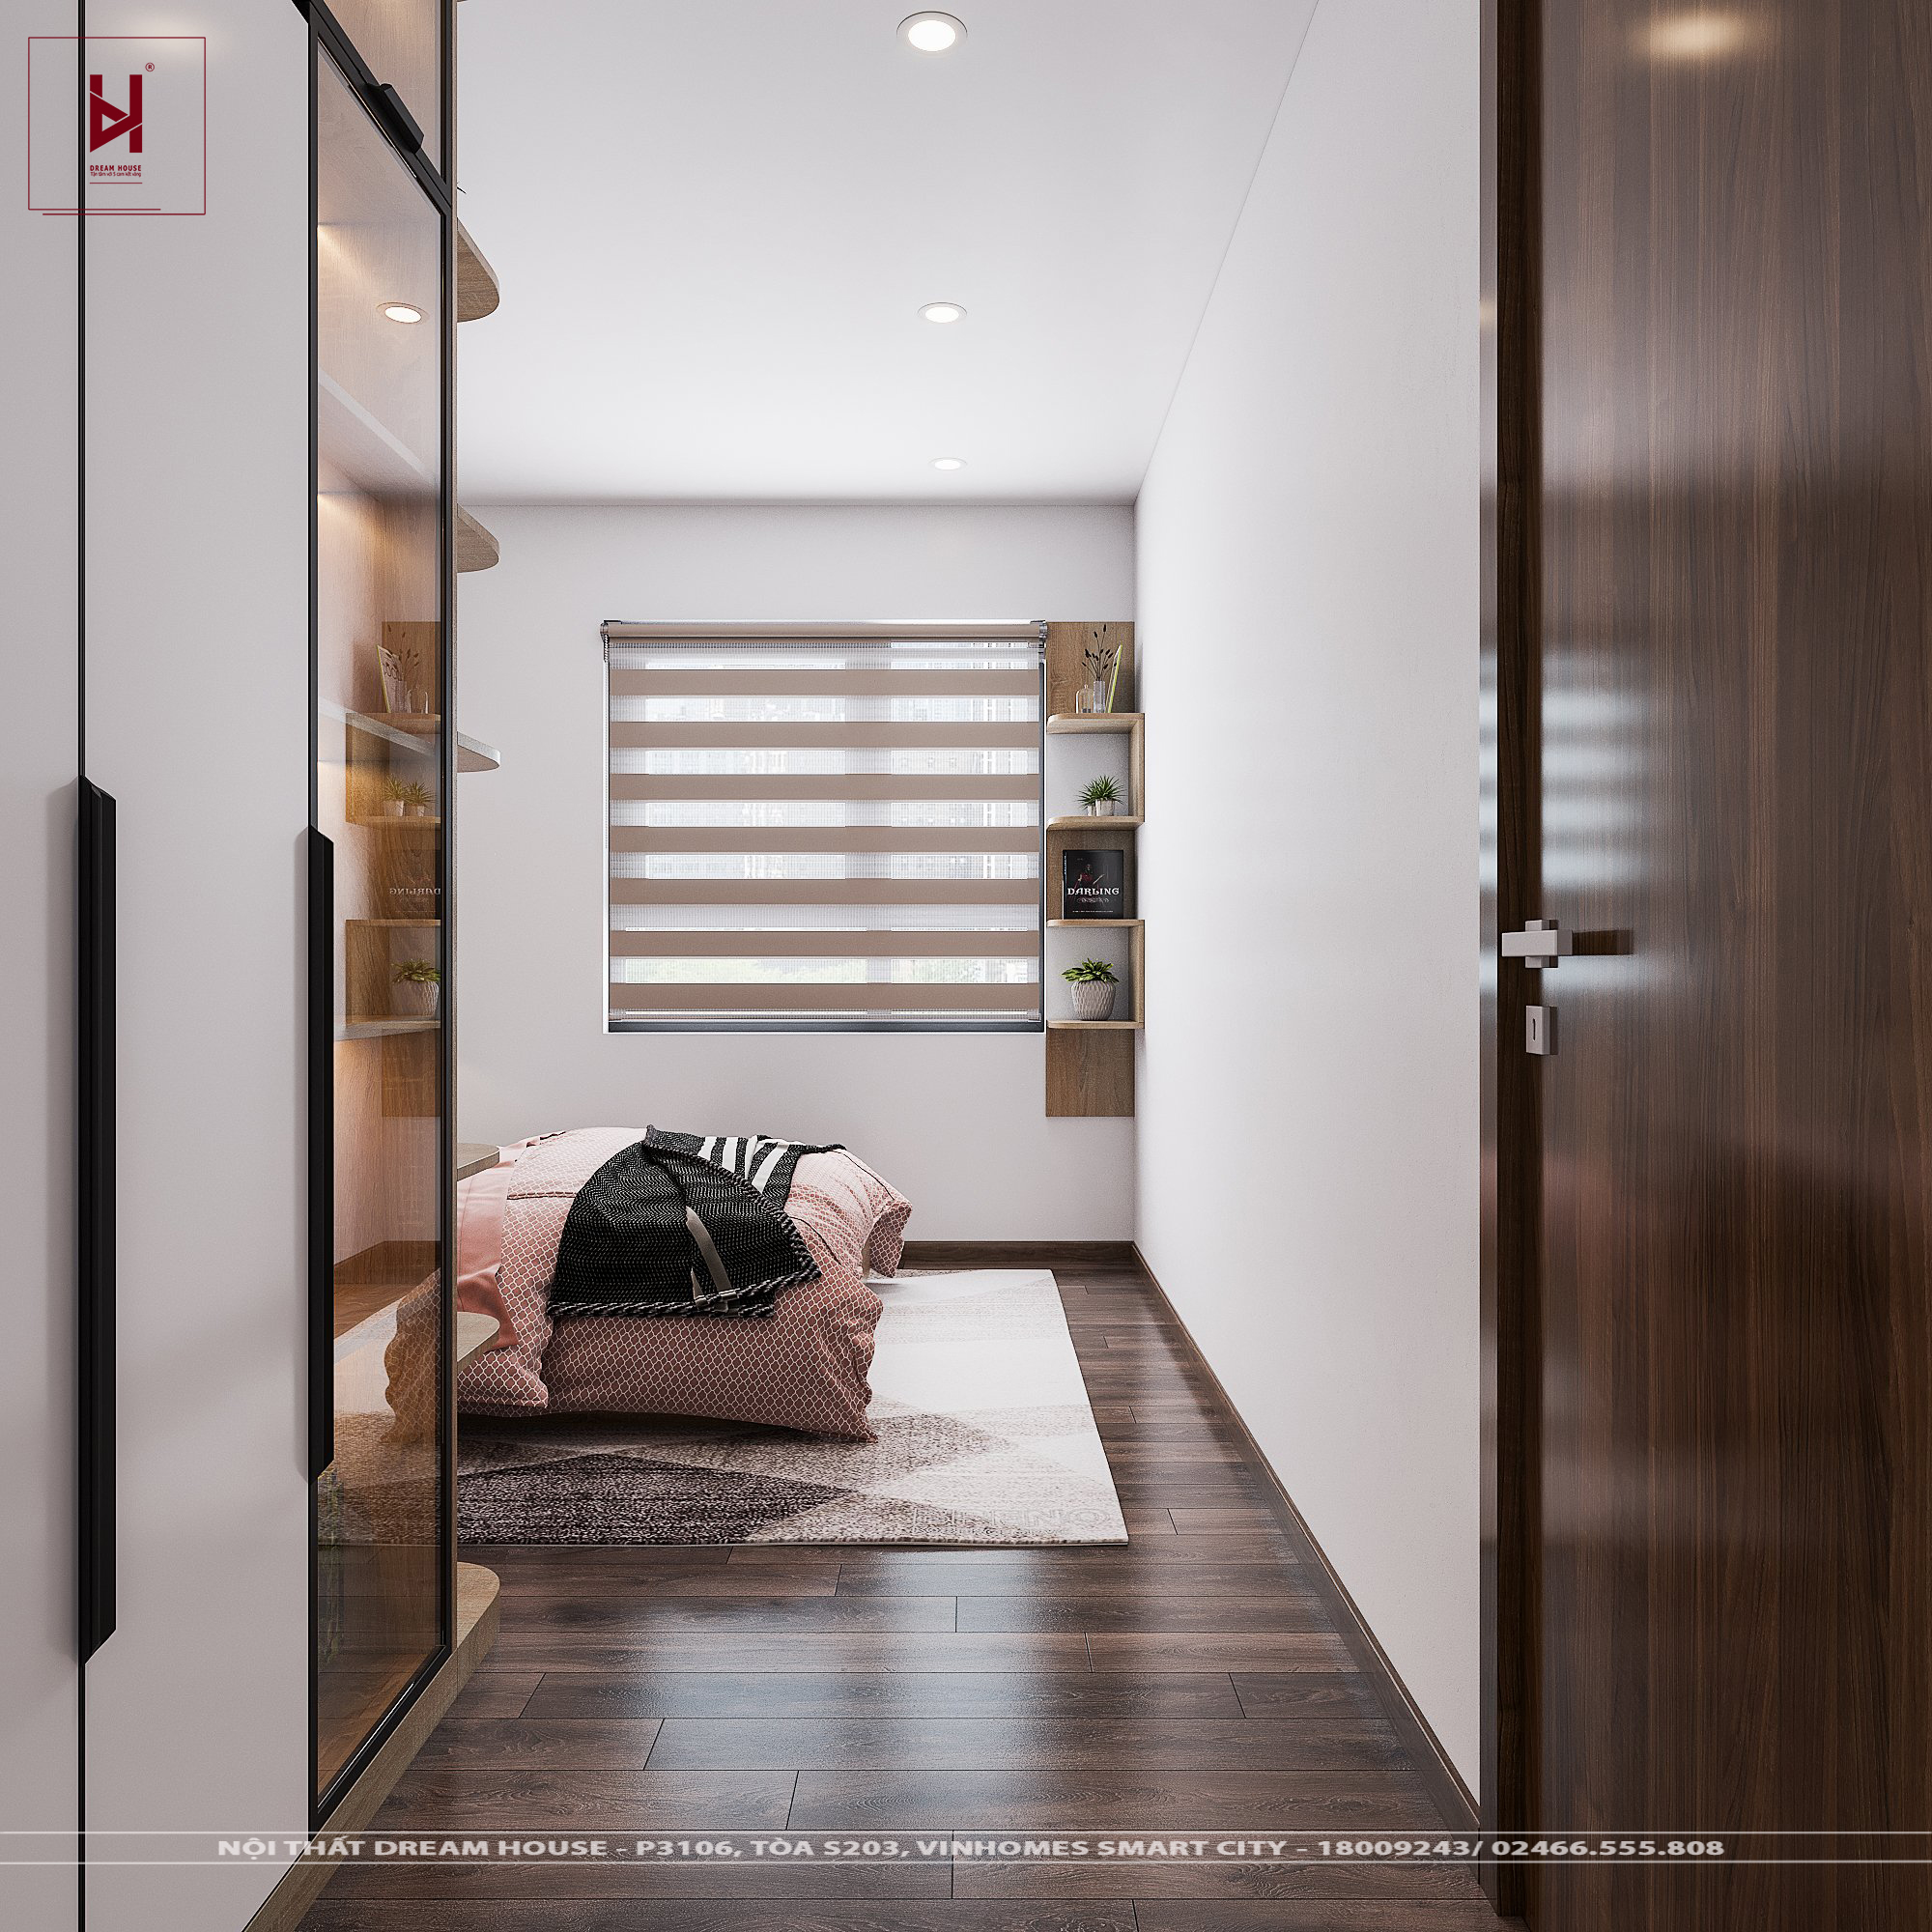 Với phong cách thiết kế nội thất sang trọng, thiết kế nội thất chung cư Ngoại Giao Đoàn 101m2 - cô Lan đang trở thành điểm nhấn thu hút khách hàng. Với sự tinh tế trong chọn vật liệu và trang trí không gian, căn hộ của cô Lan đã trở nên rất đẳng cấp và ấn tượng.